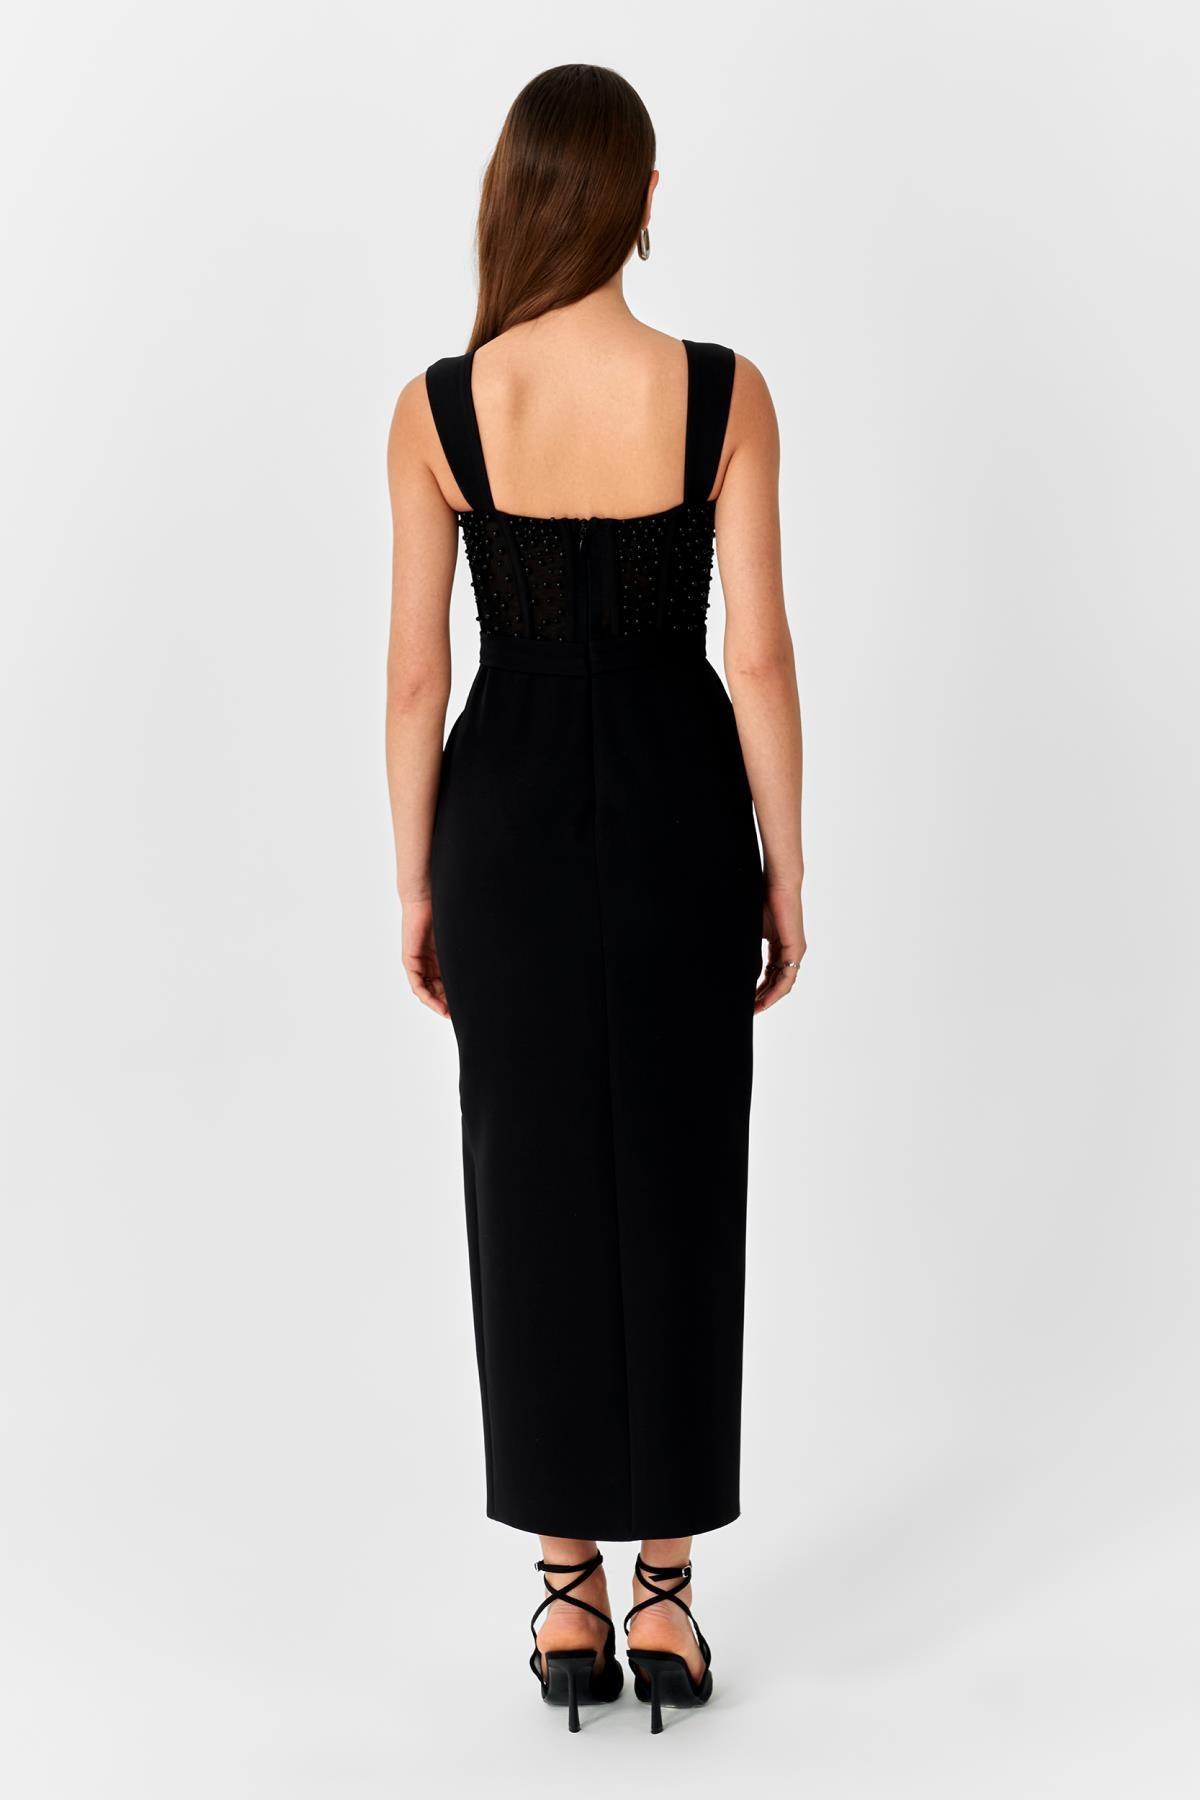 İnci Çakmalı Chanel Krep Yırtmaçlı Uzun Elbise - Eser Giyim